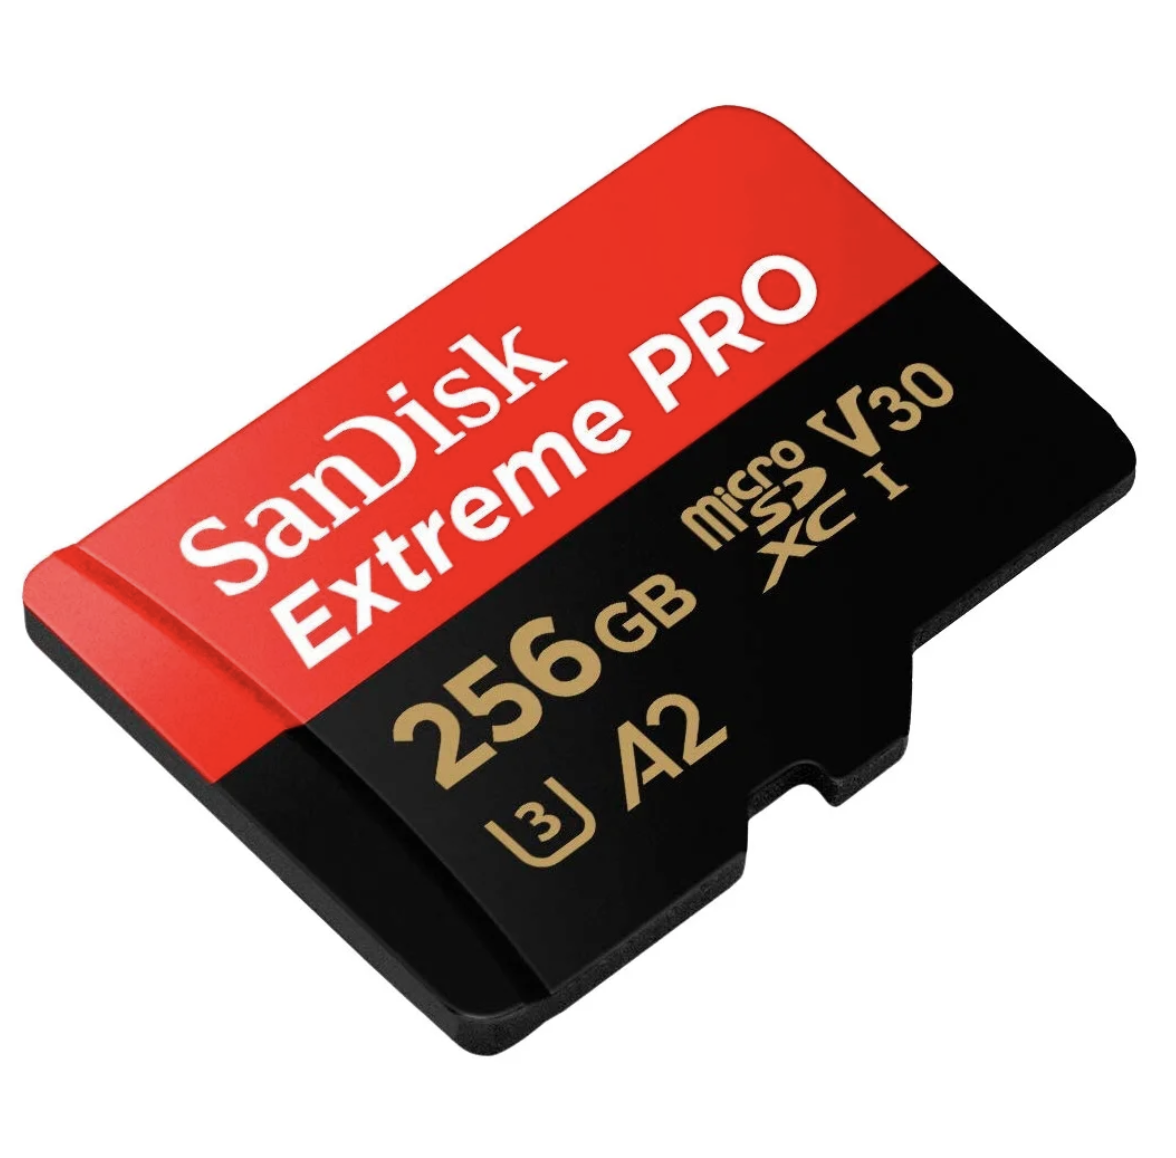 1тб памяти купить. Карта памяти SANDISK extreme Pro 128gb. SANDISK extreme MICROSDXC 64gb. Карта памяти SANDISK extreme Pro MICROSDXC class 10 UHS class 3 v30 a2 170mb/s 400gb + SD Adapter. SANDISK 256gb extreme Pro UHS-I u3 SDXC.